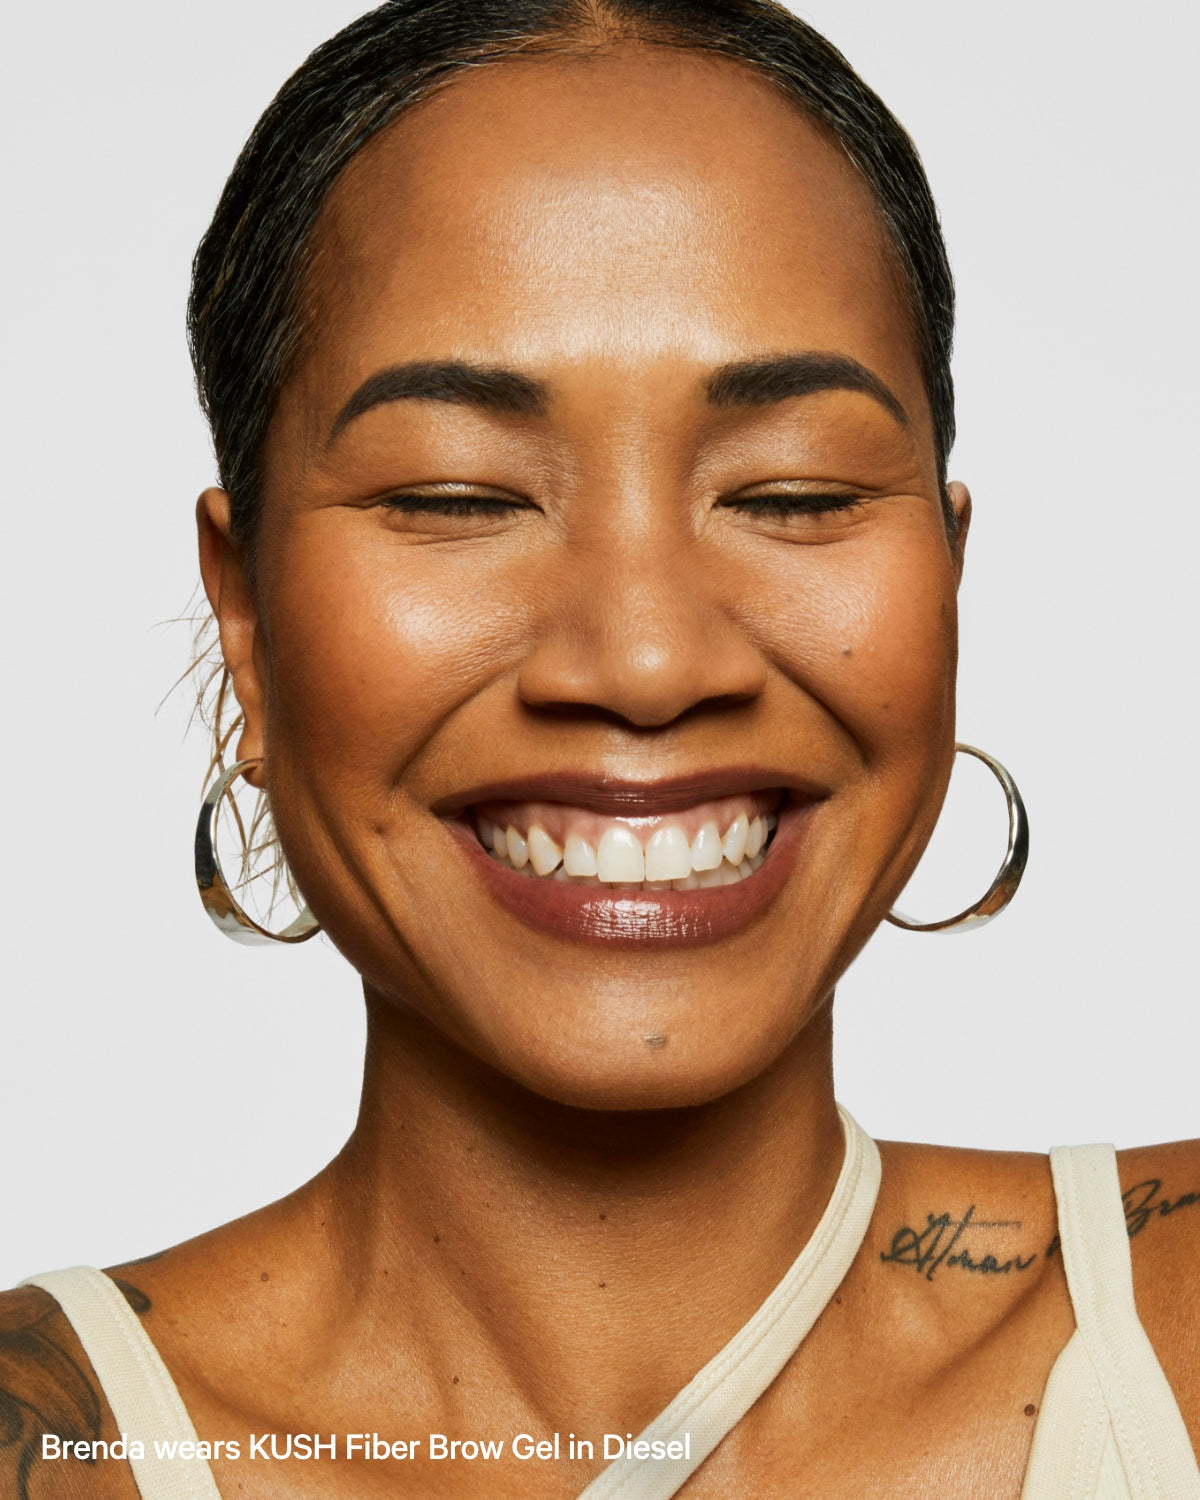 KUSH Fiber Brow Gel Disel Portrait Brenda | Milk Makeup